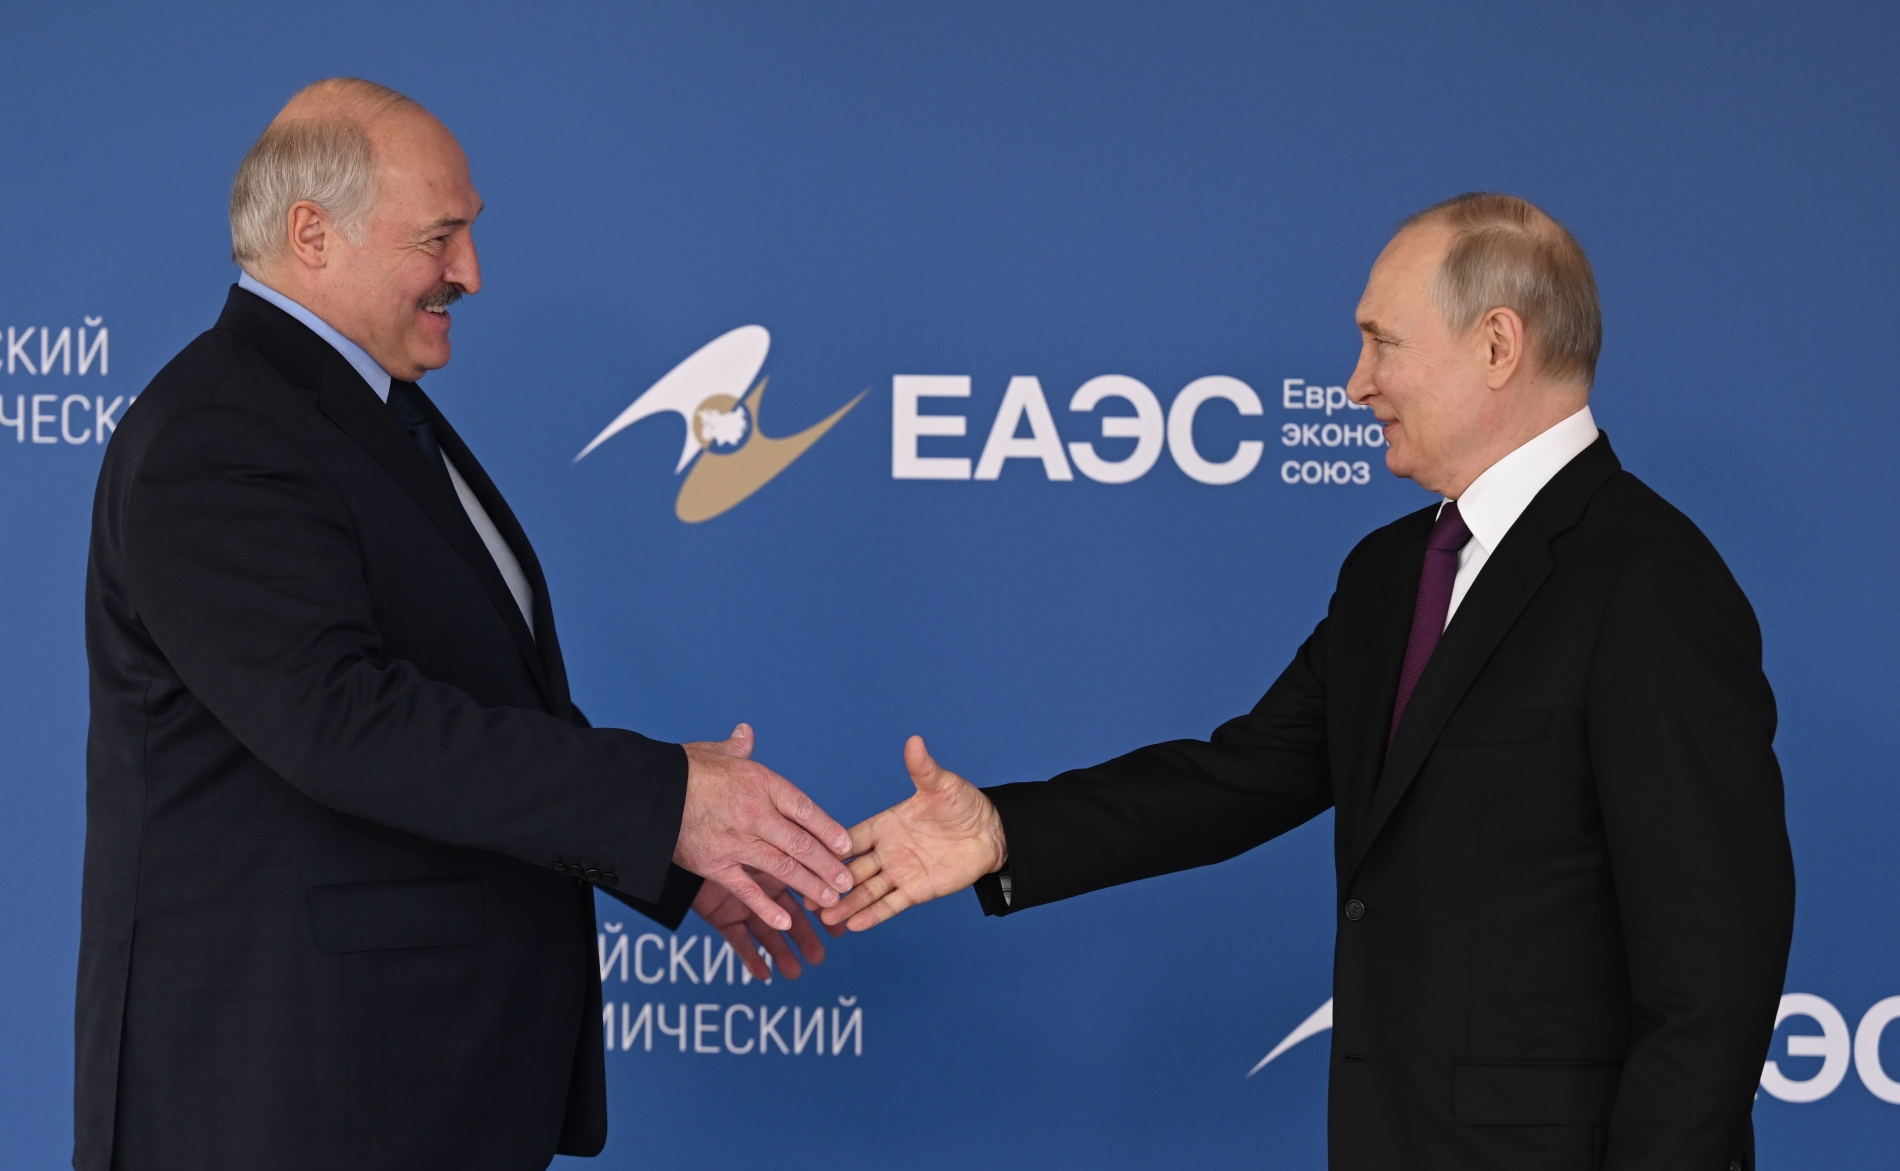 Владимир Путин и Александр Лукашенко тепло поприветствовали друг друга перед пленарным заседанием Евразийского экономического форума